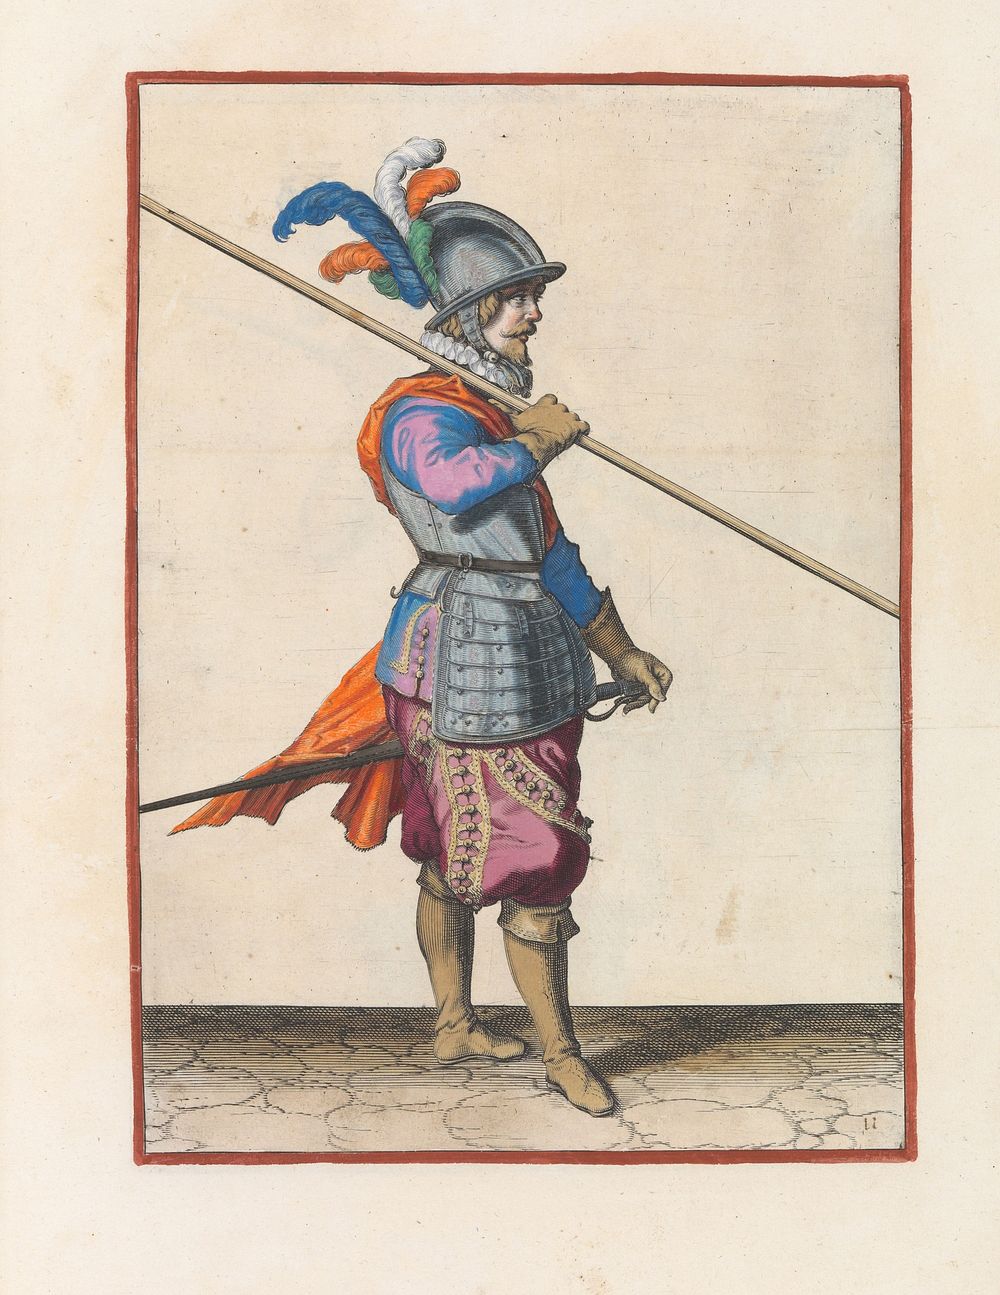 Soldaat die zijn spies op zijn rechterschouder draagt, de punt schuin naar de grond gericht (c. 1597 - 1607) by Jacques de…